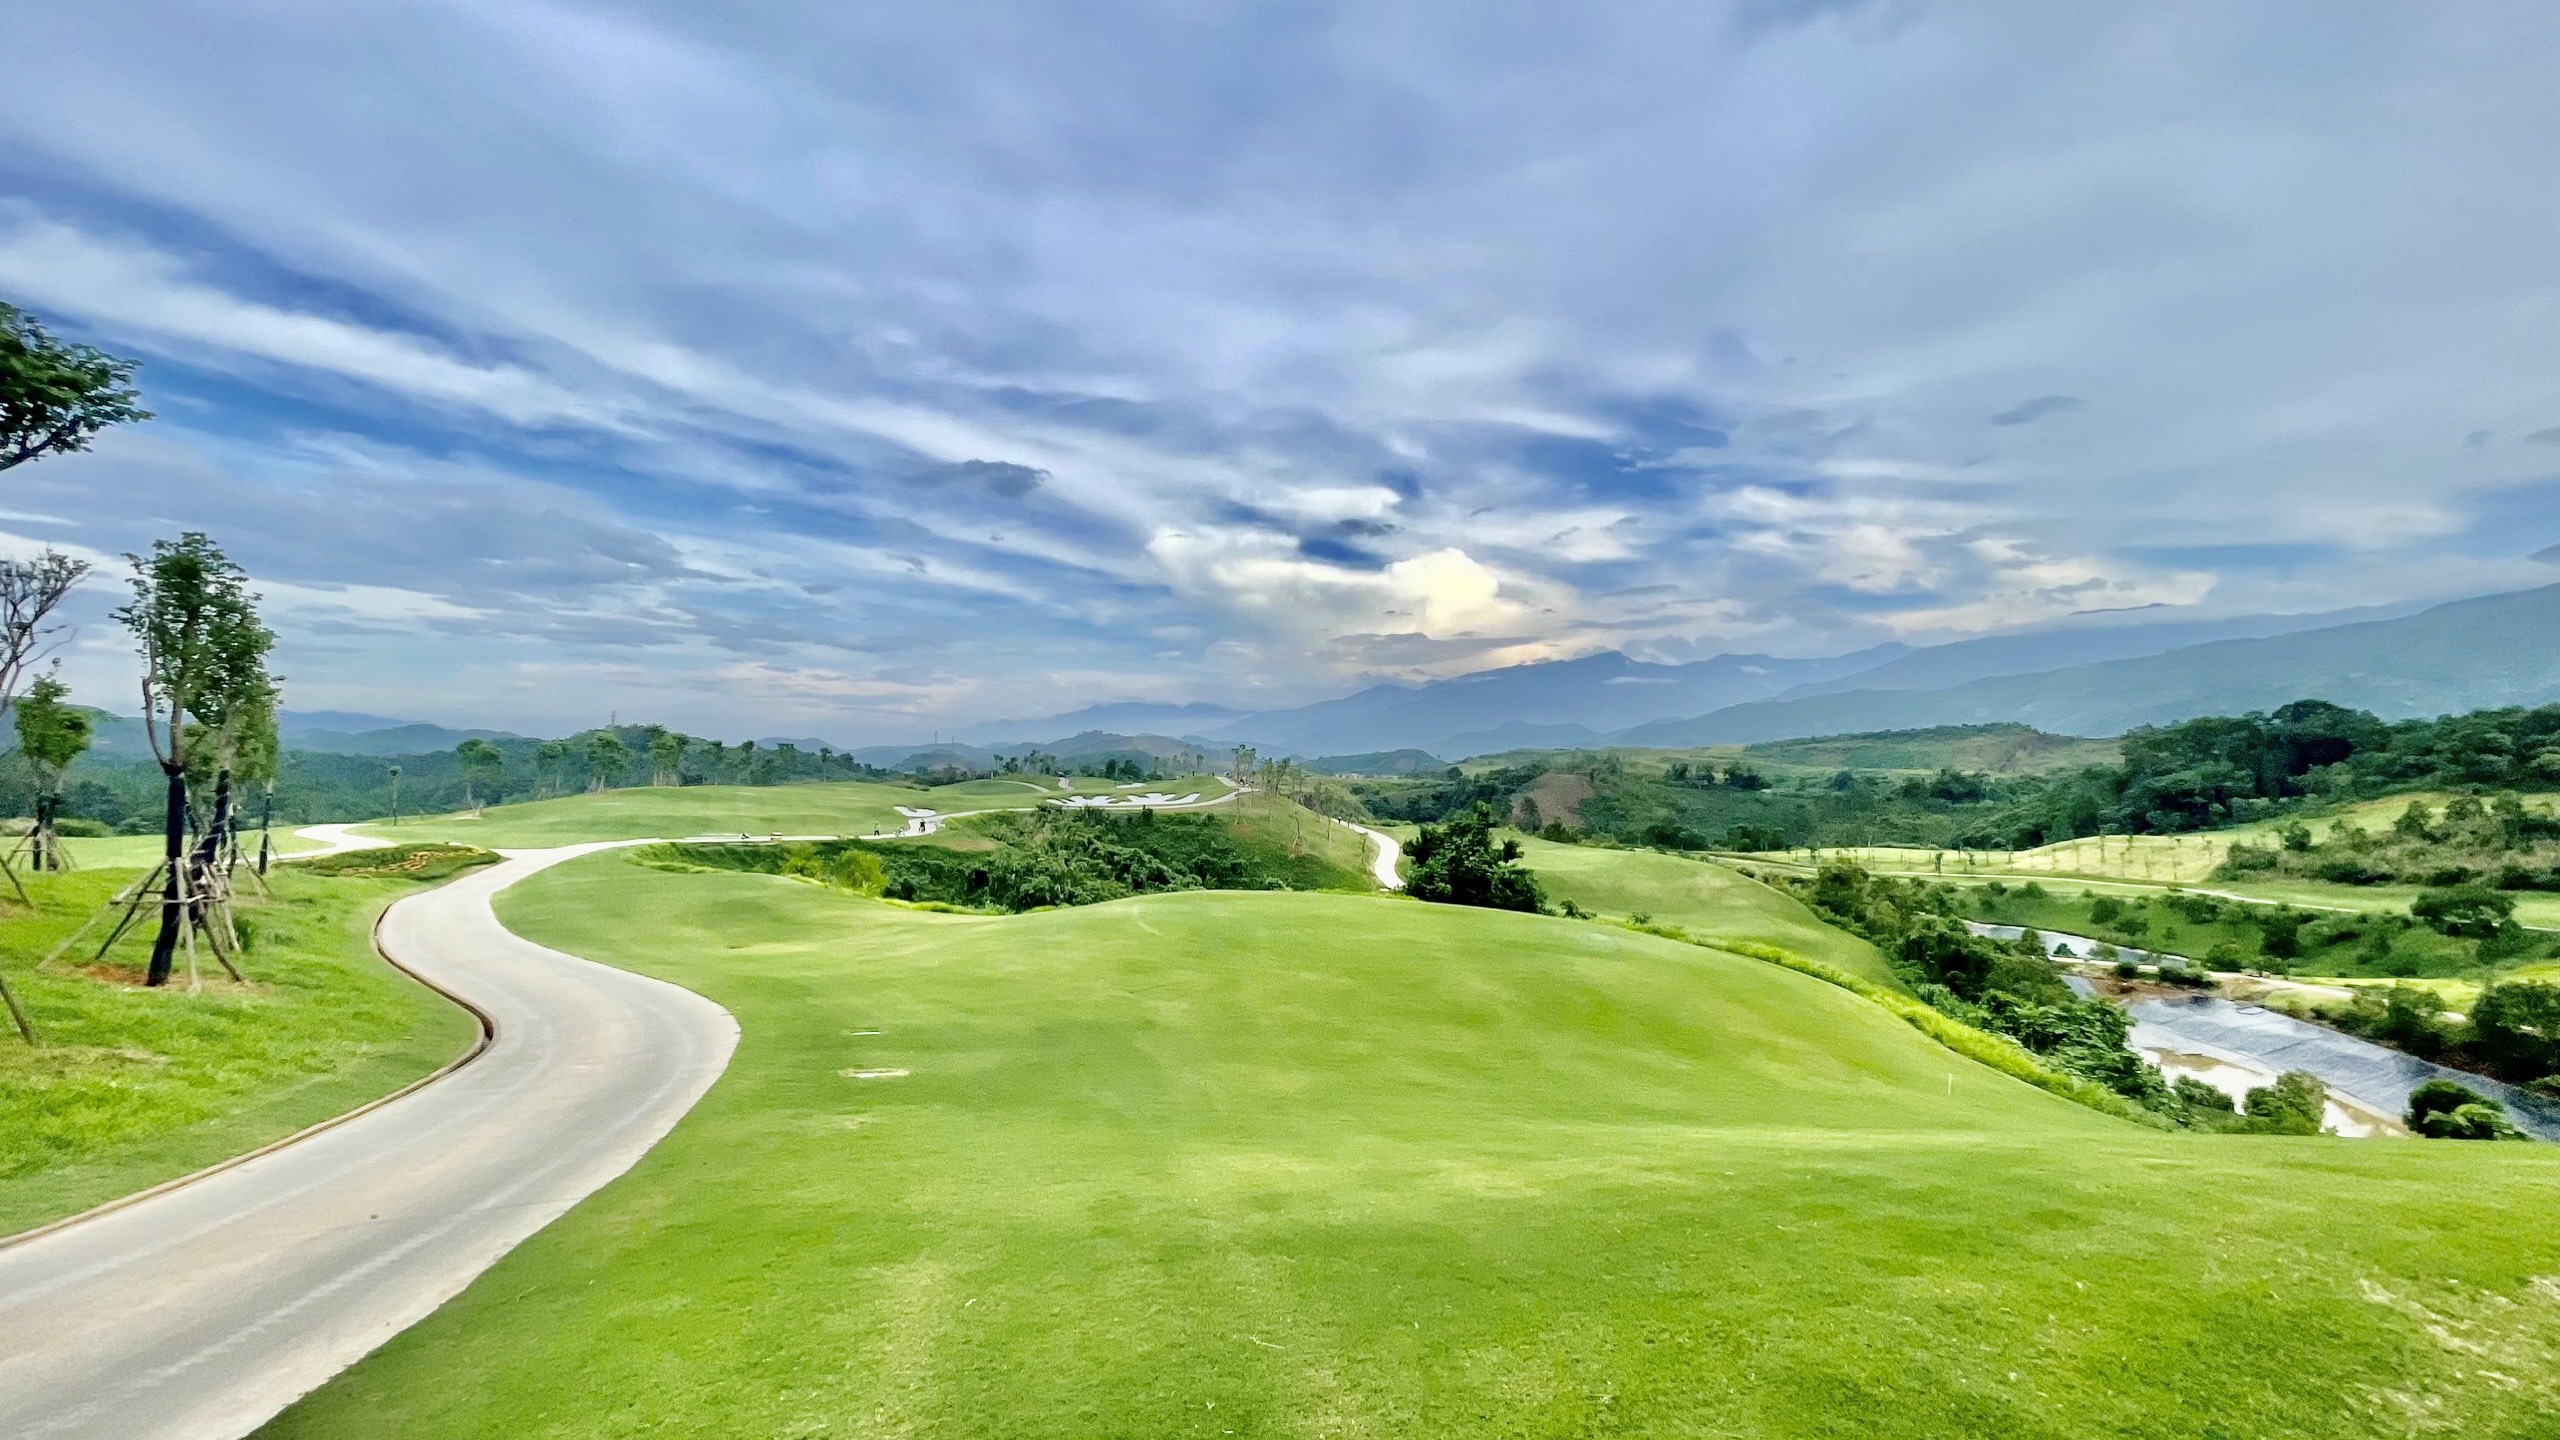 Sân golf Lào Cai - "Làn gió mới" trong làng golf Việt